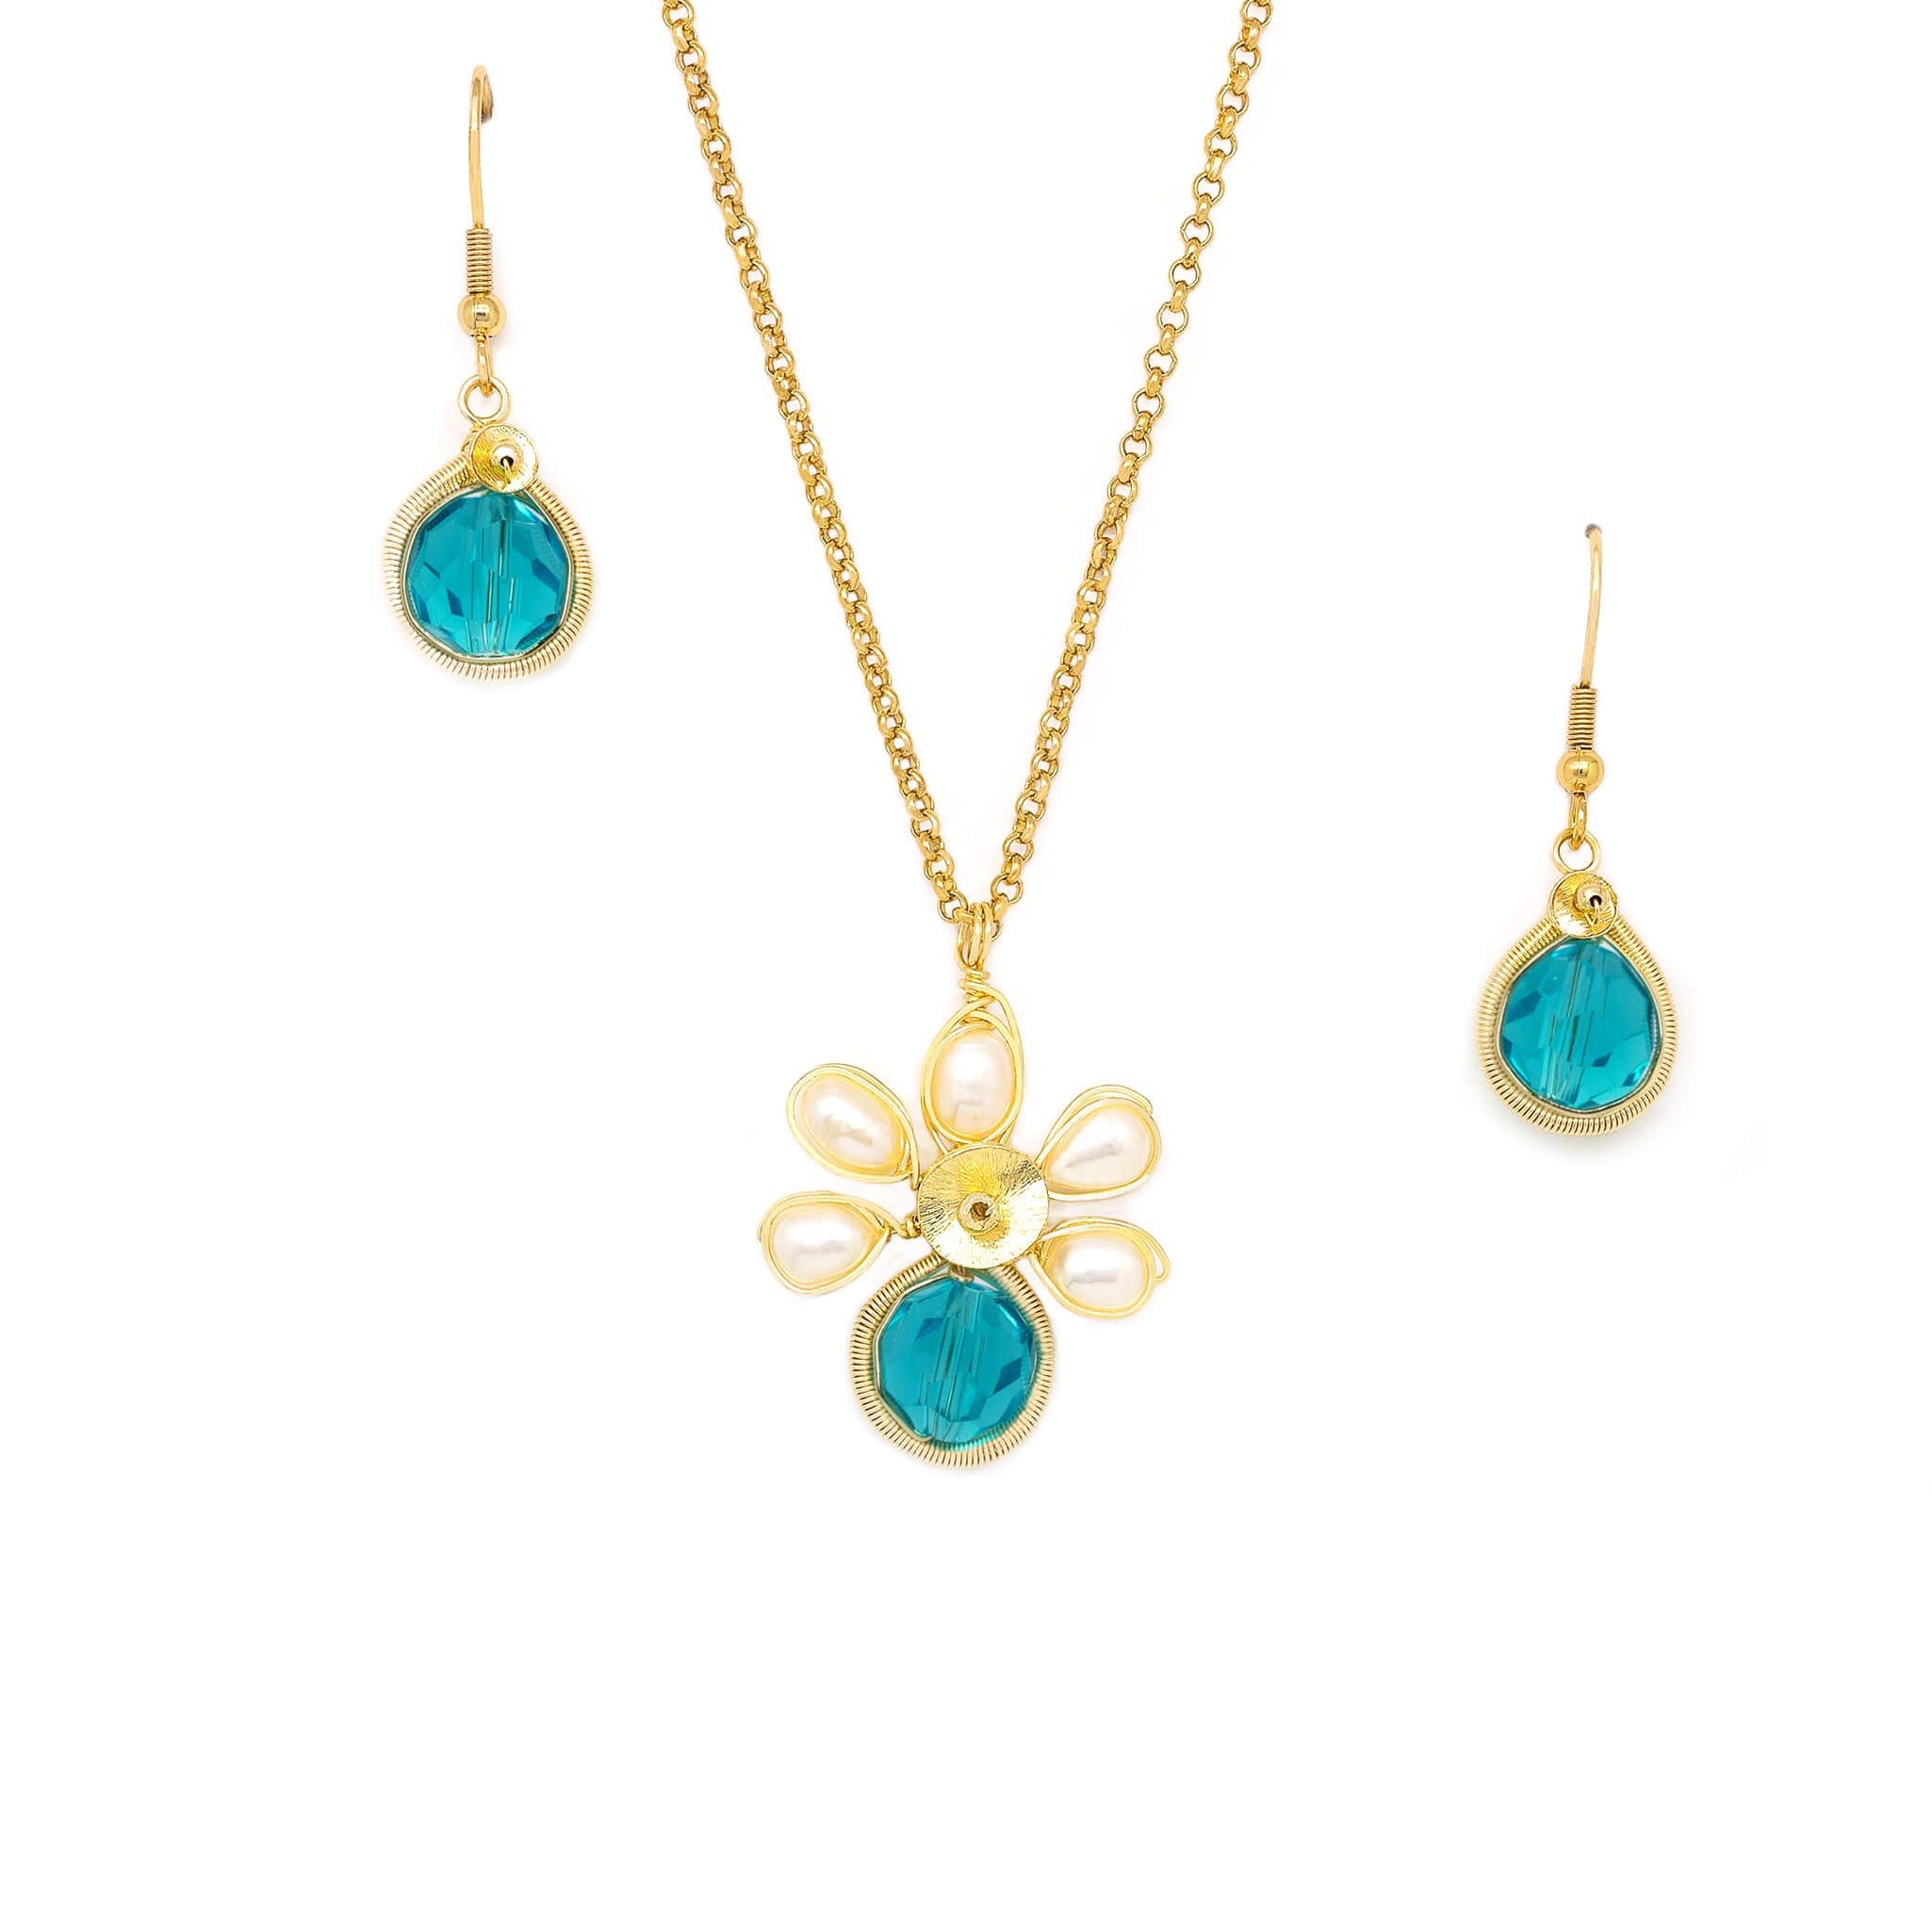 SOMETHING BLUE NECKLACE – Katie Waltman Jewelry